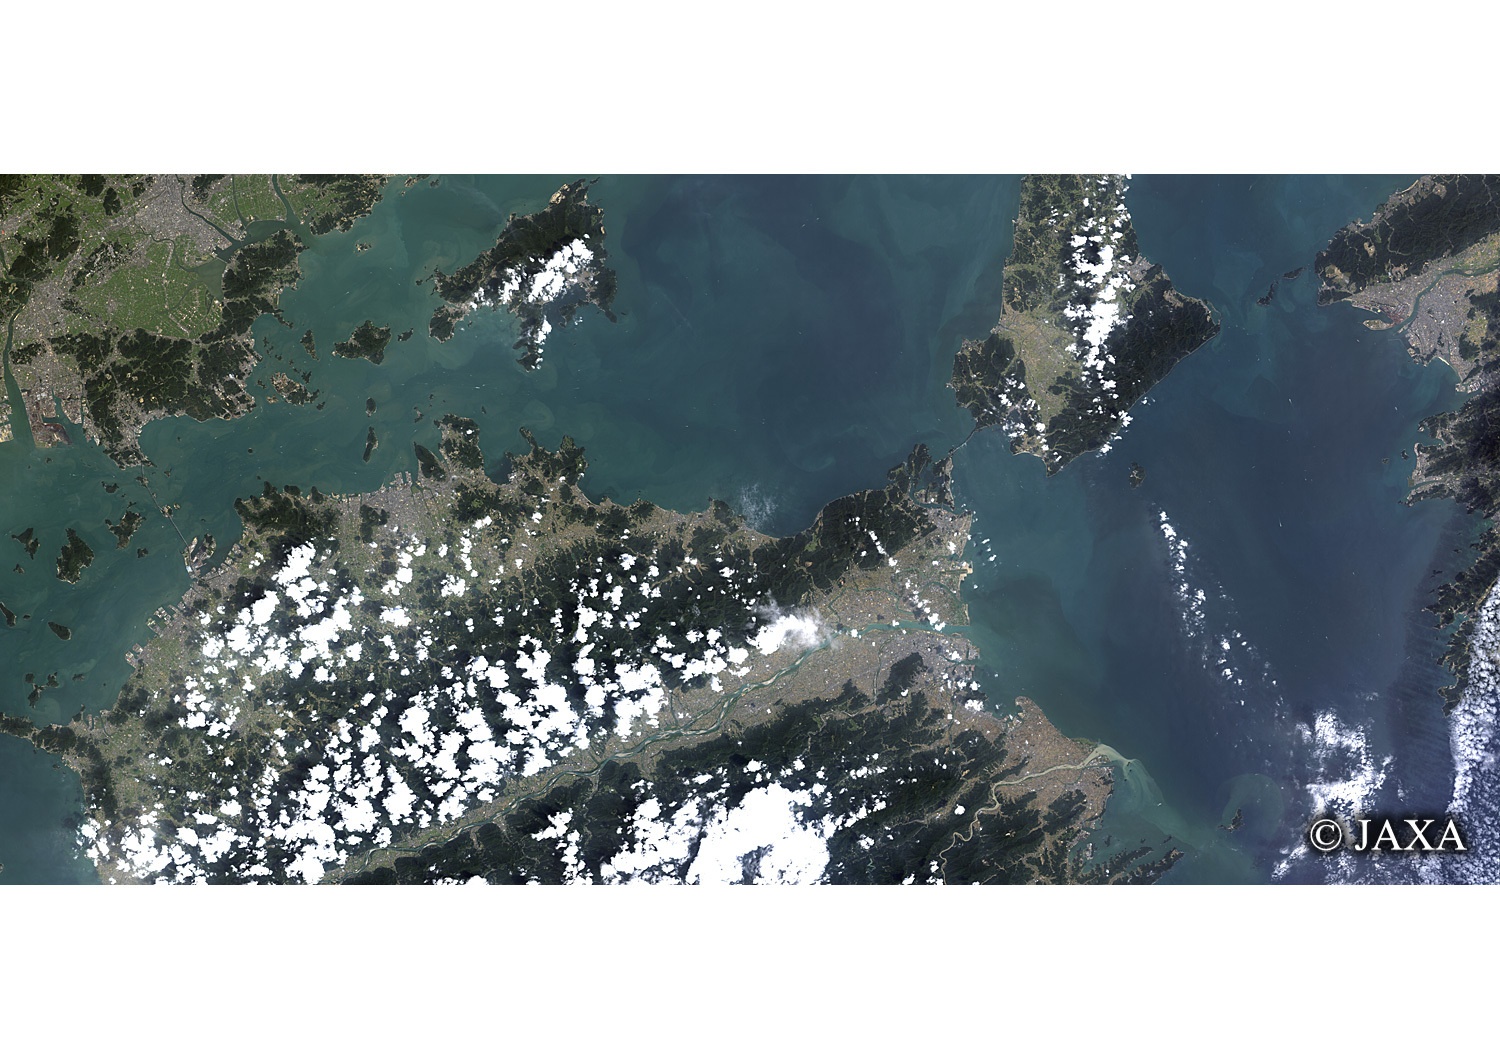 だいちから見た日本の都市 鳴門海峡辺:衛星画像